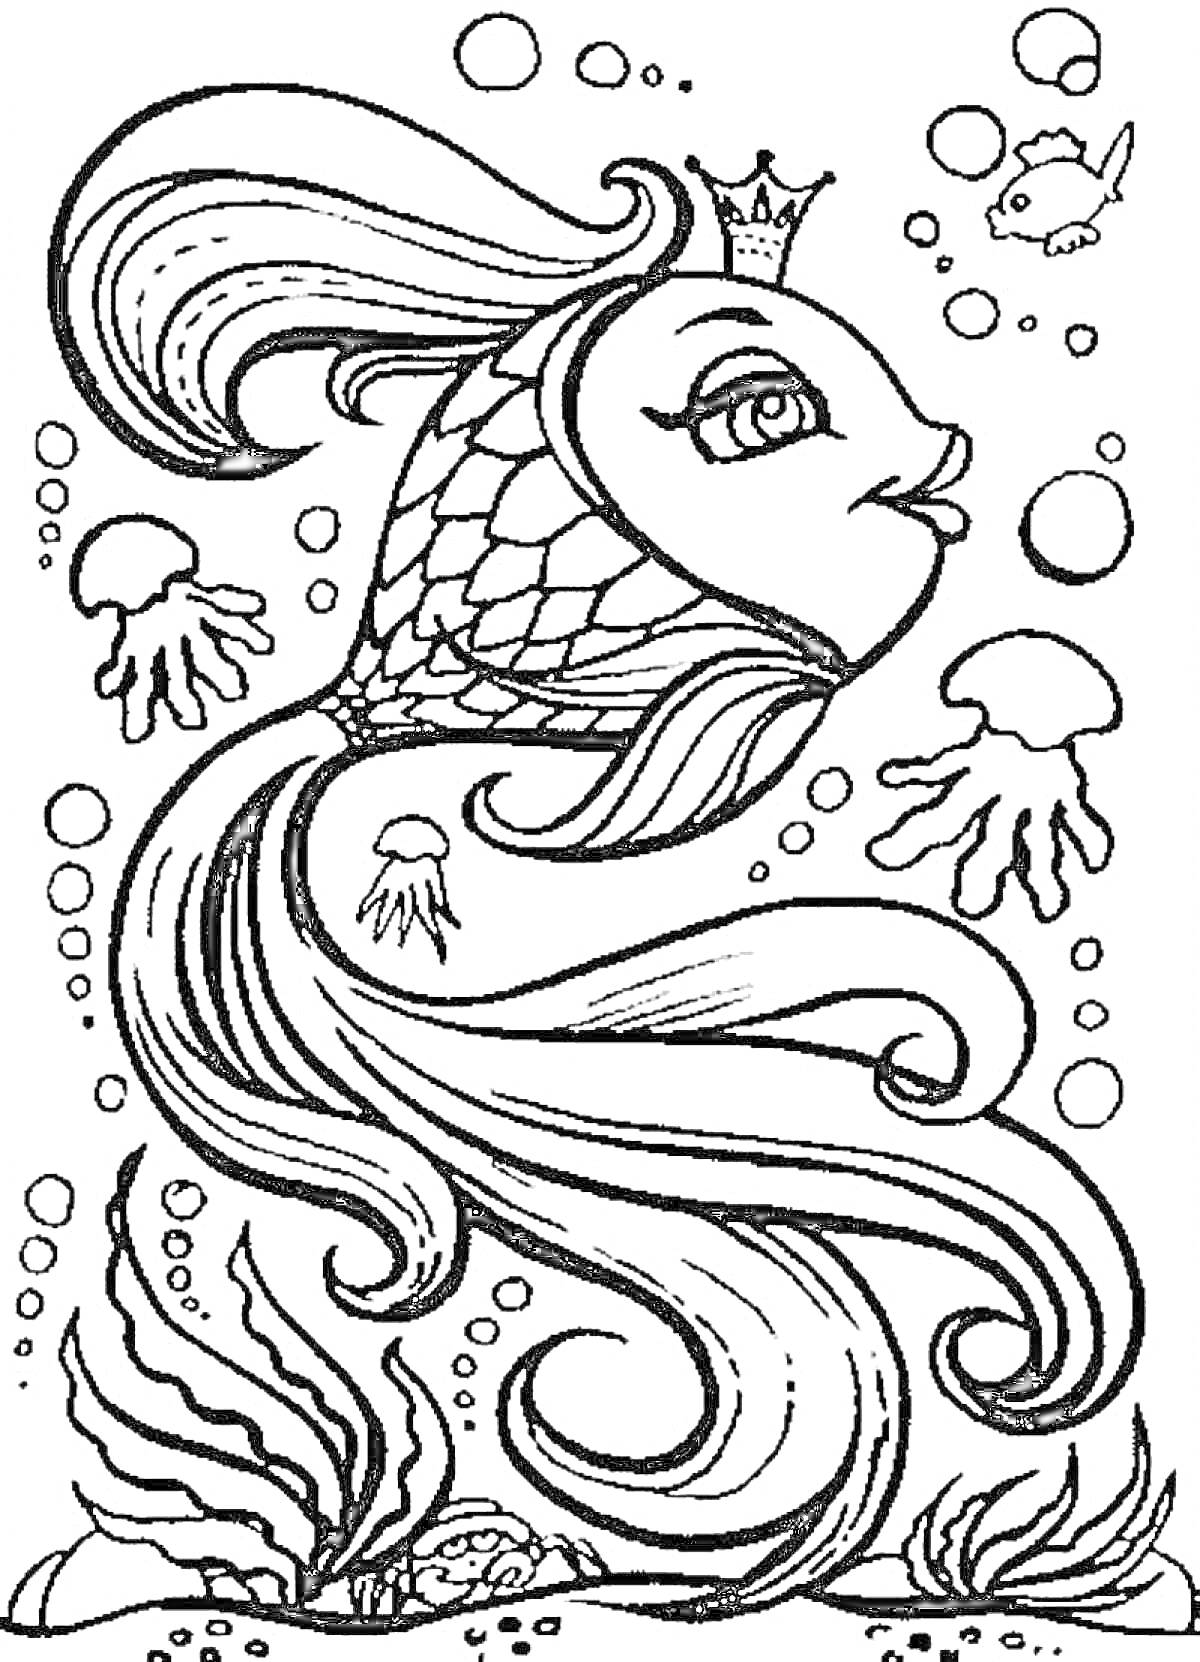 Раскраска Золотая рыбка в короне с медузами, пузырьками и водорослями на дне моря